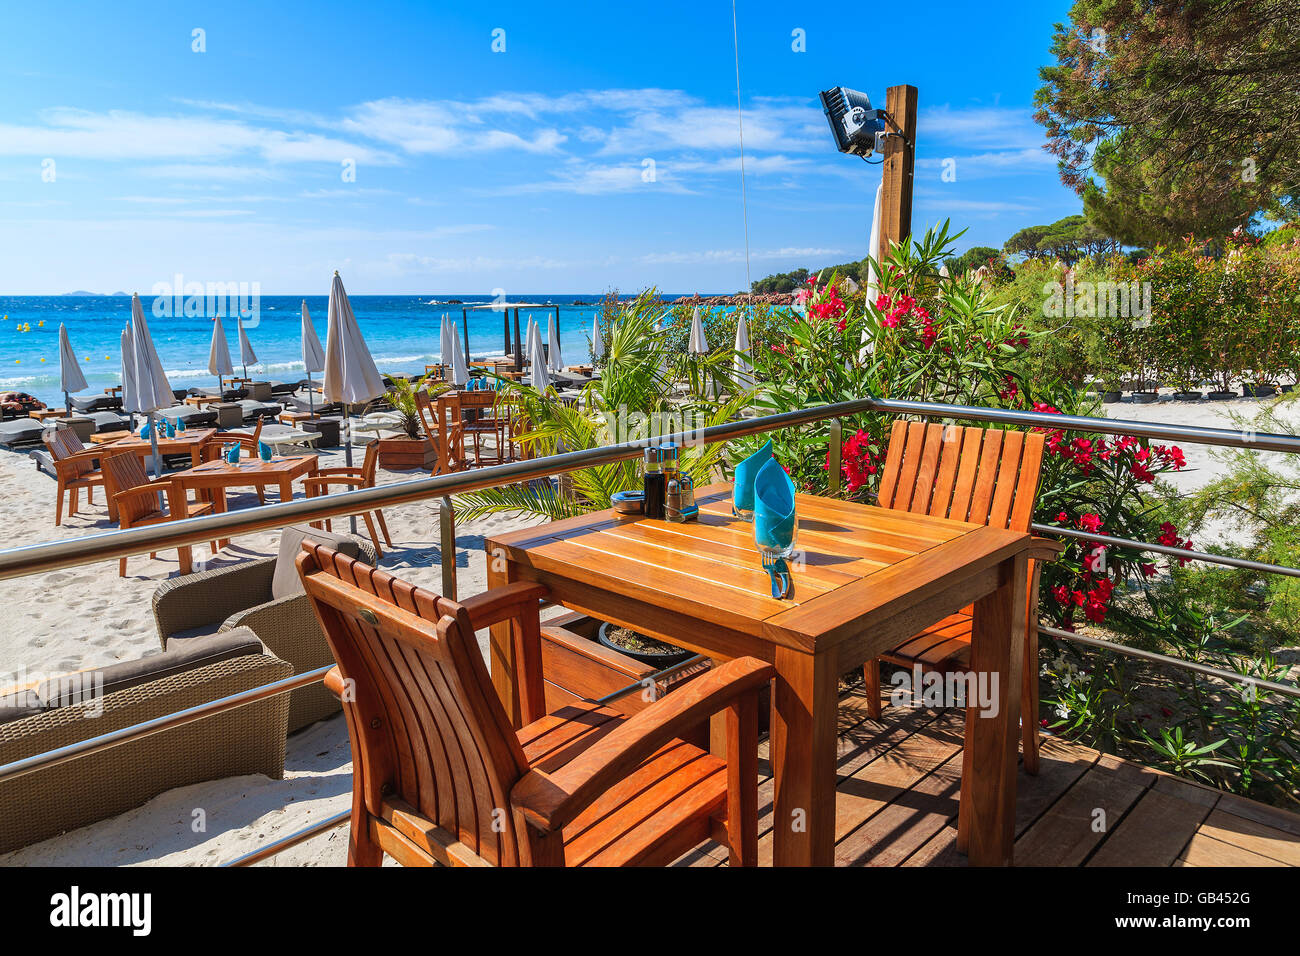 PALOMBAGGIA Strand, Korsika - 24. Juni 2015: Tisch im Restaurant am Strand von Palombaggia, südlichen Insel Korsika, Frankreich. Diese b Stockfoto